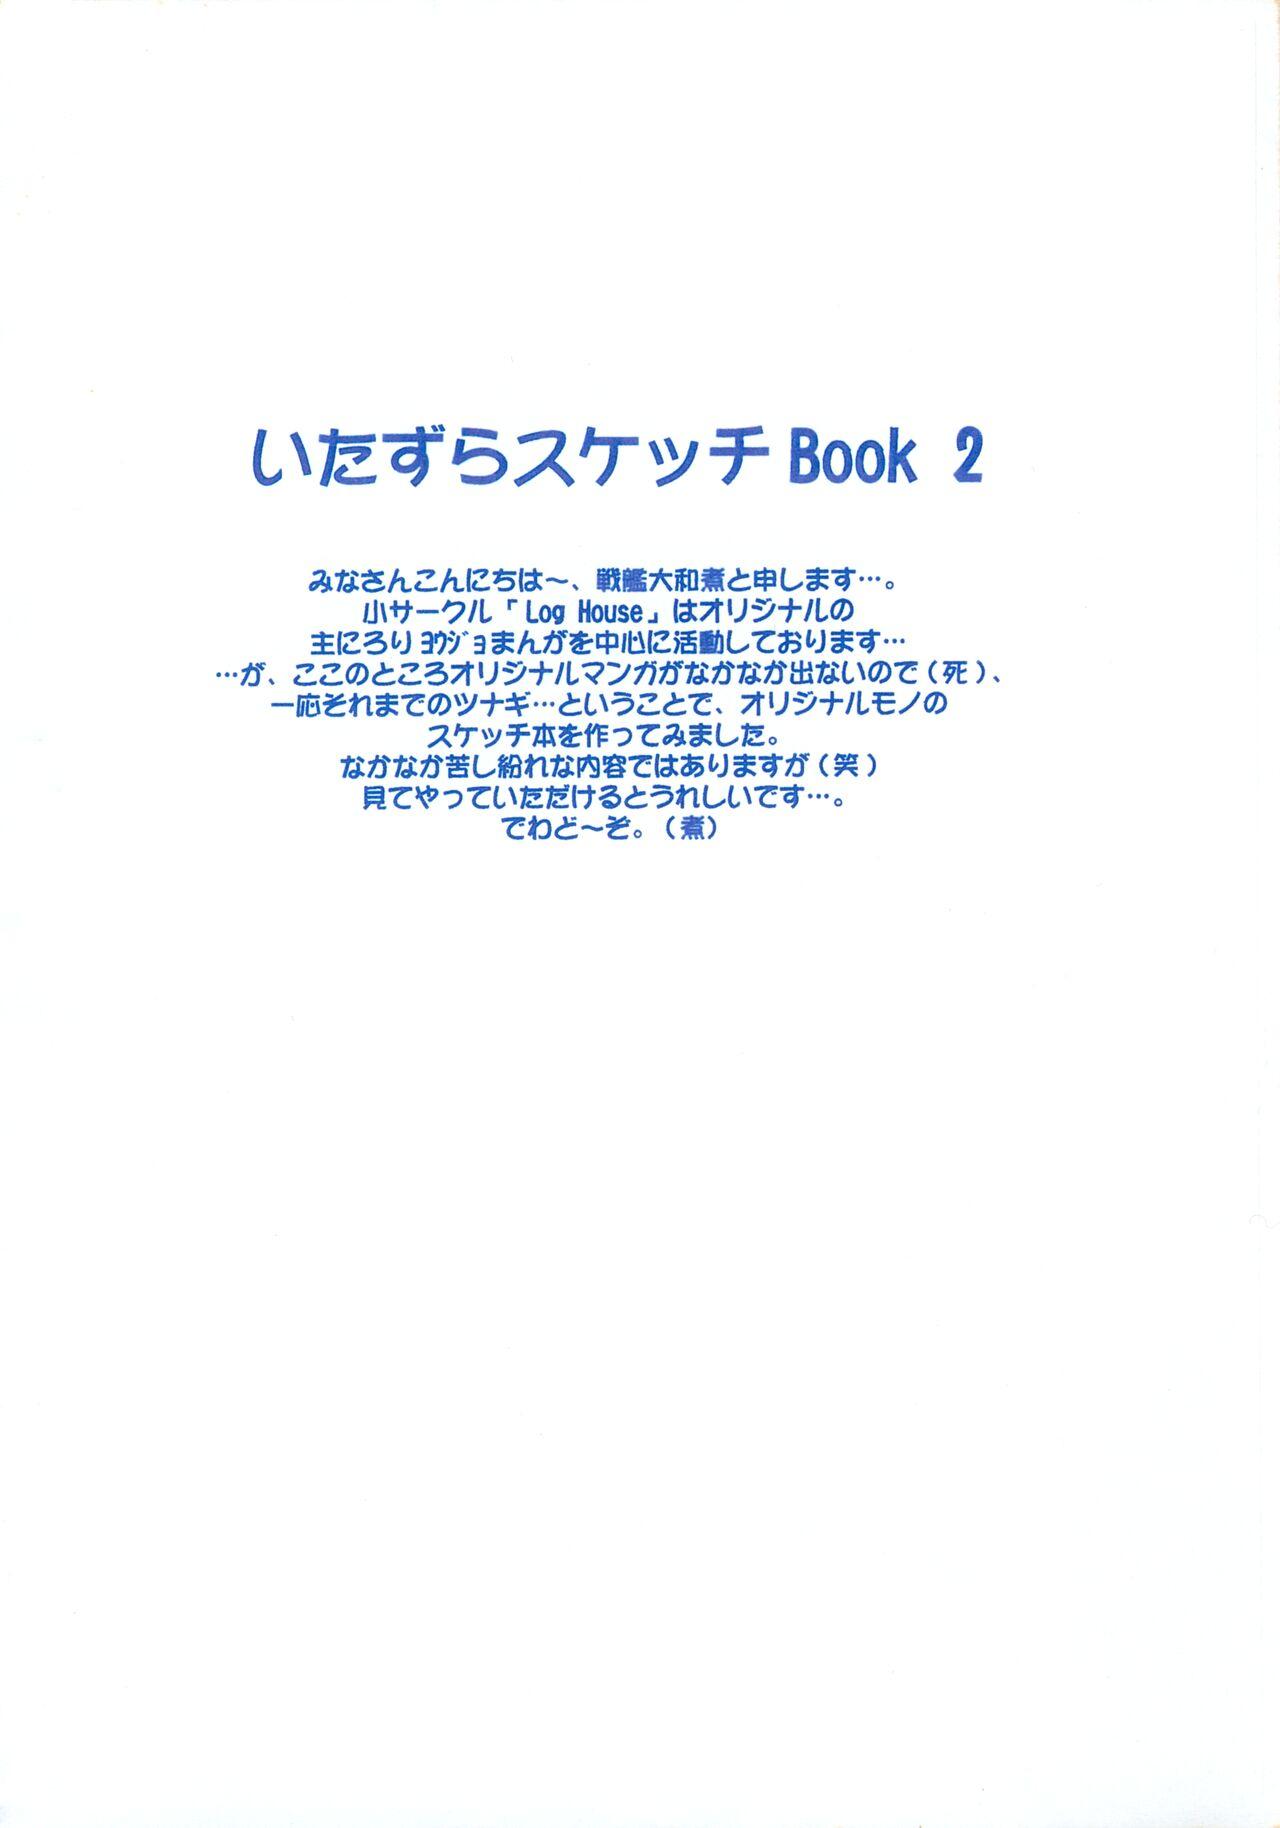 Itazura Sketch Book 2 2